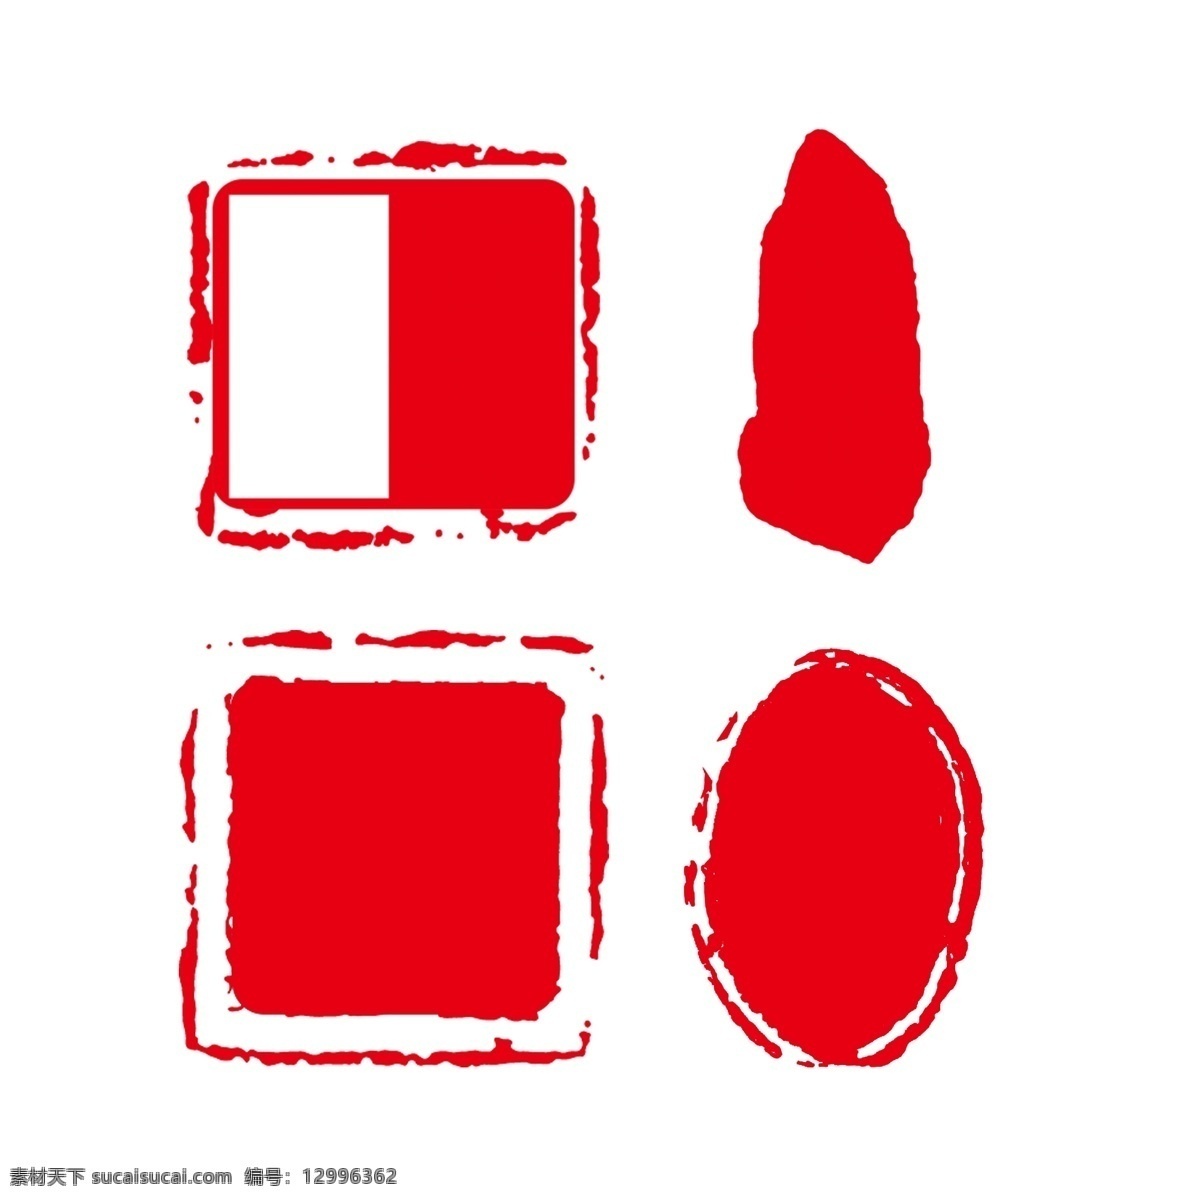 传统 红色 印章 边框 正方形 椭圆形 不规则 传统风格 中国风 可用作签名